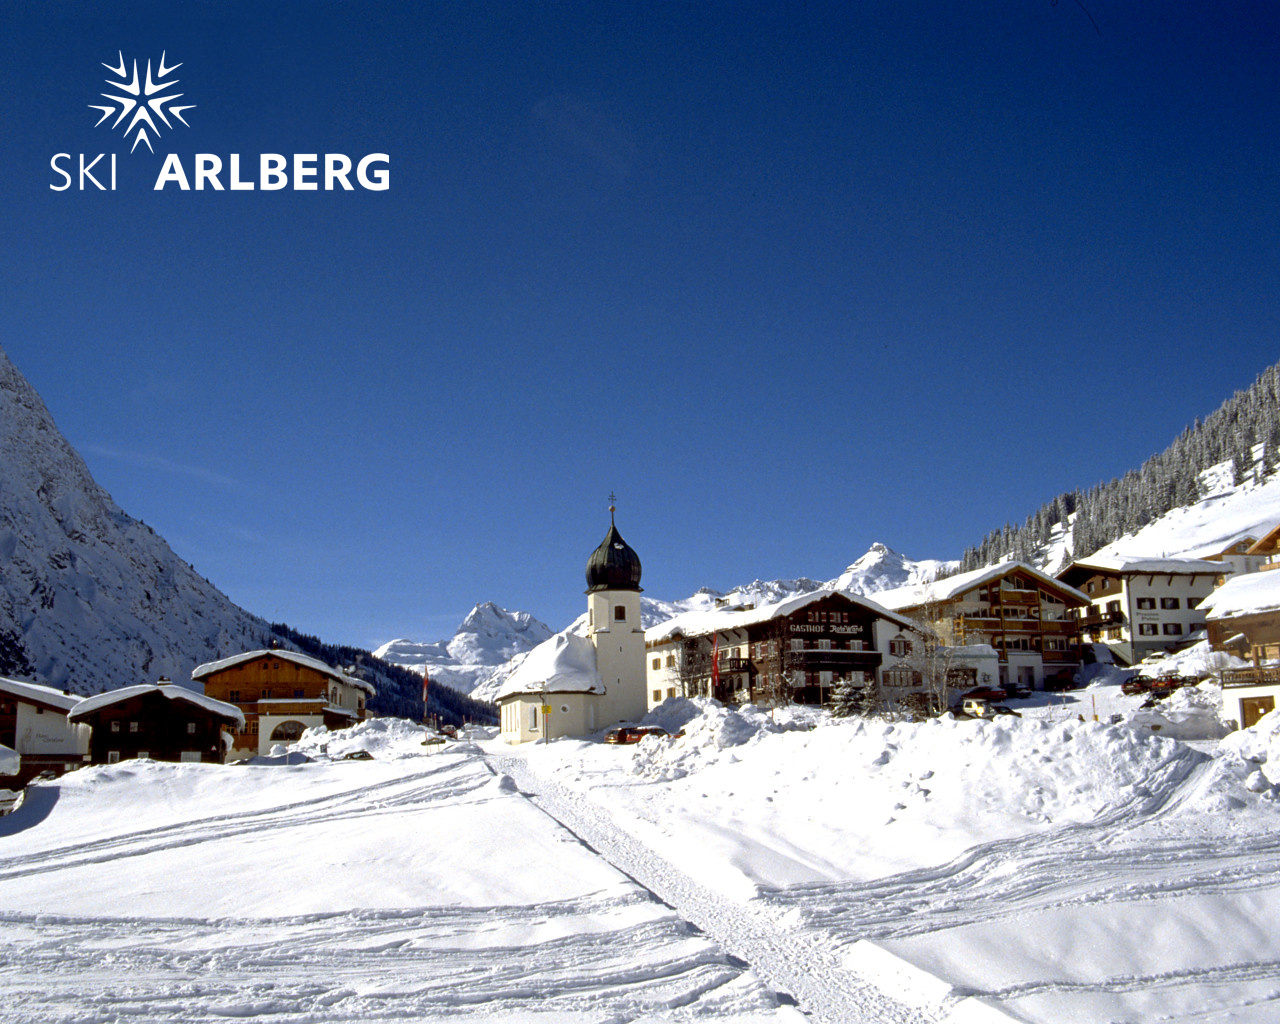 Ski Arlberg Die Wiege Des Skilaufs